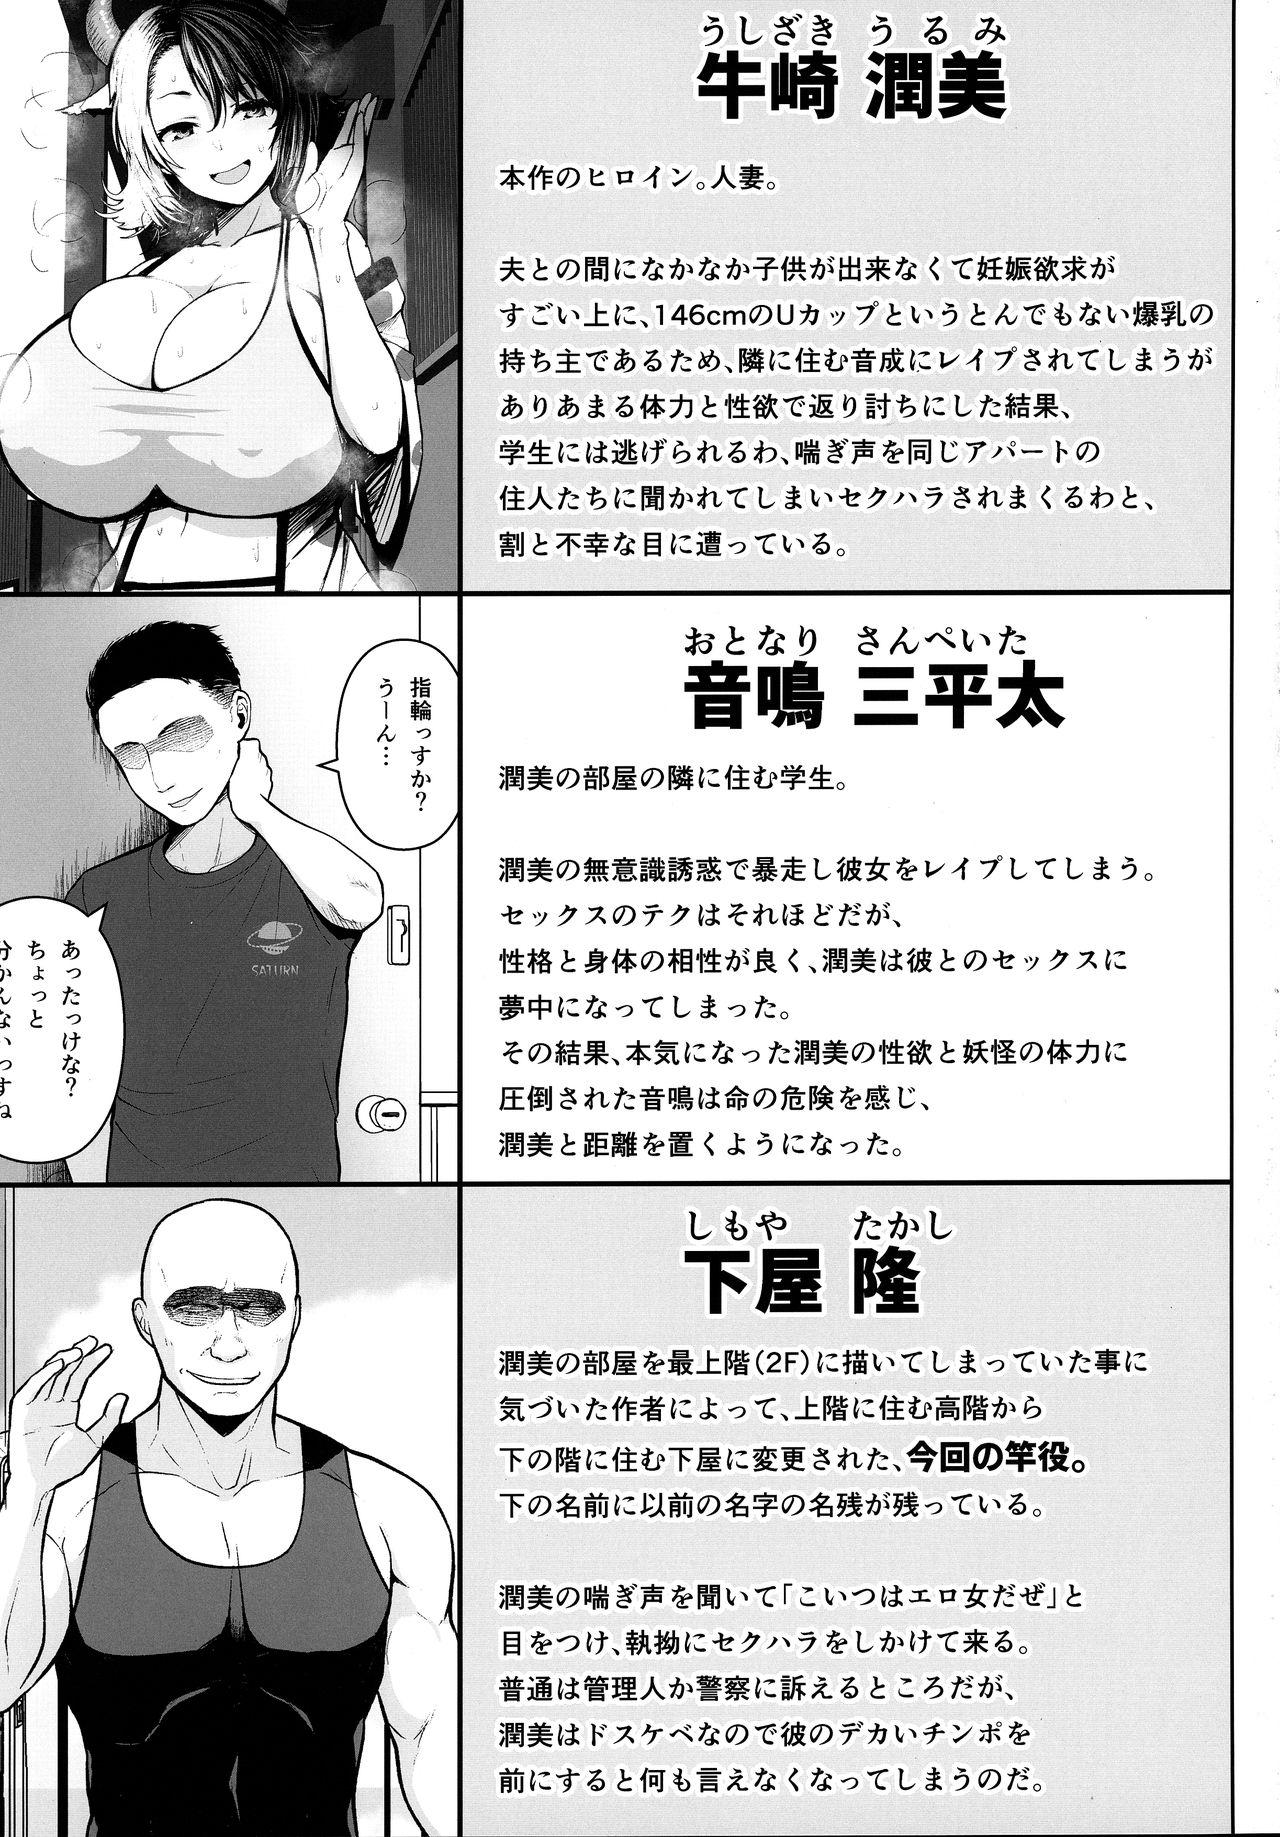 Class Room Oku-san no Oppai ga Dekasugiru no ga Warui! 3 - Touhou project Redbone - Page 2